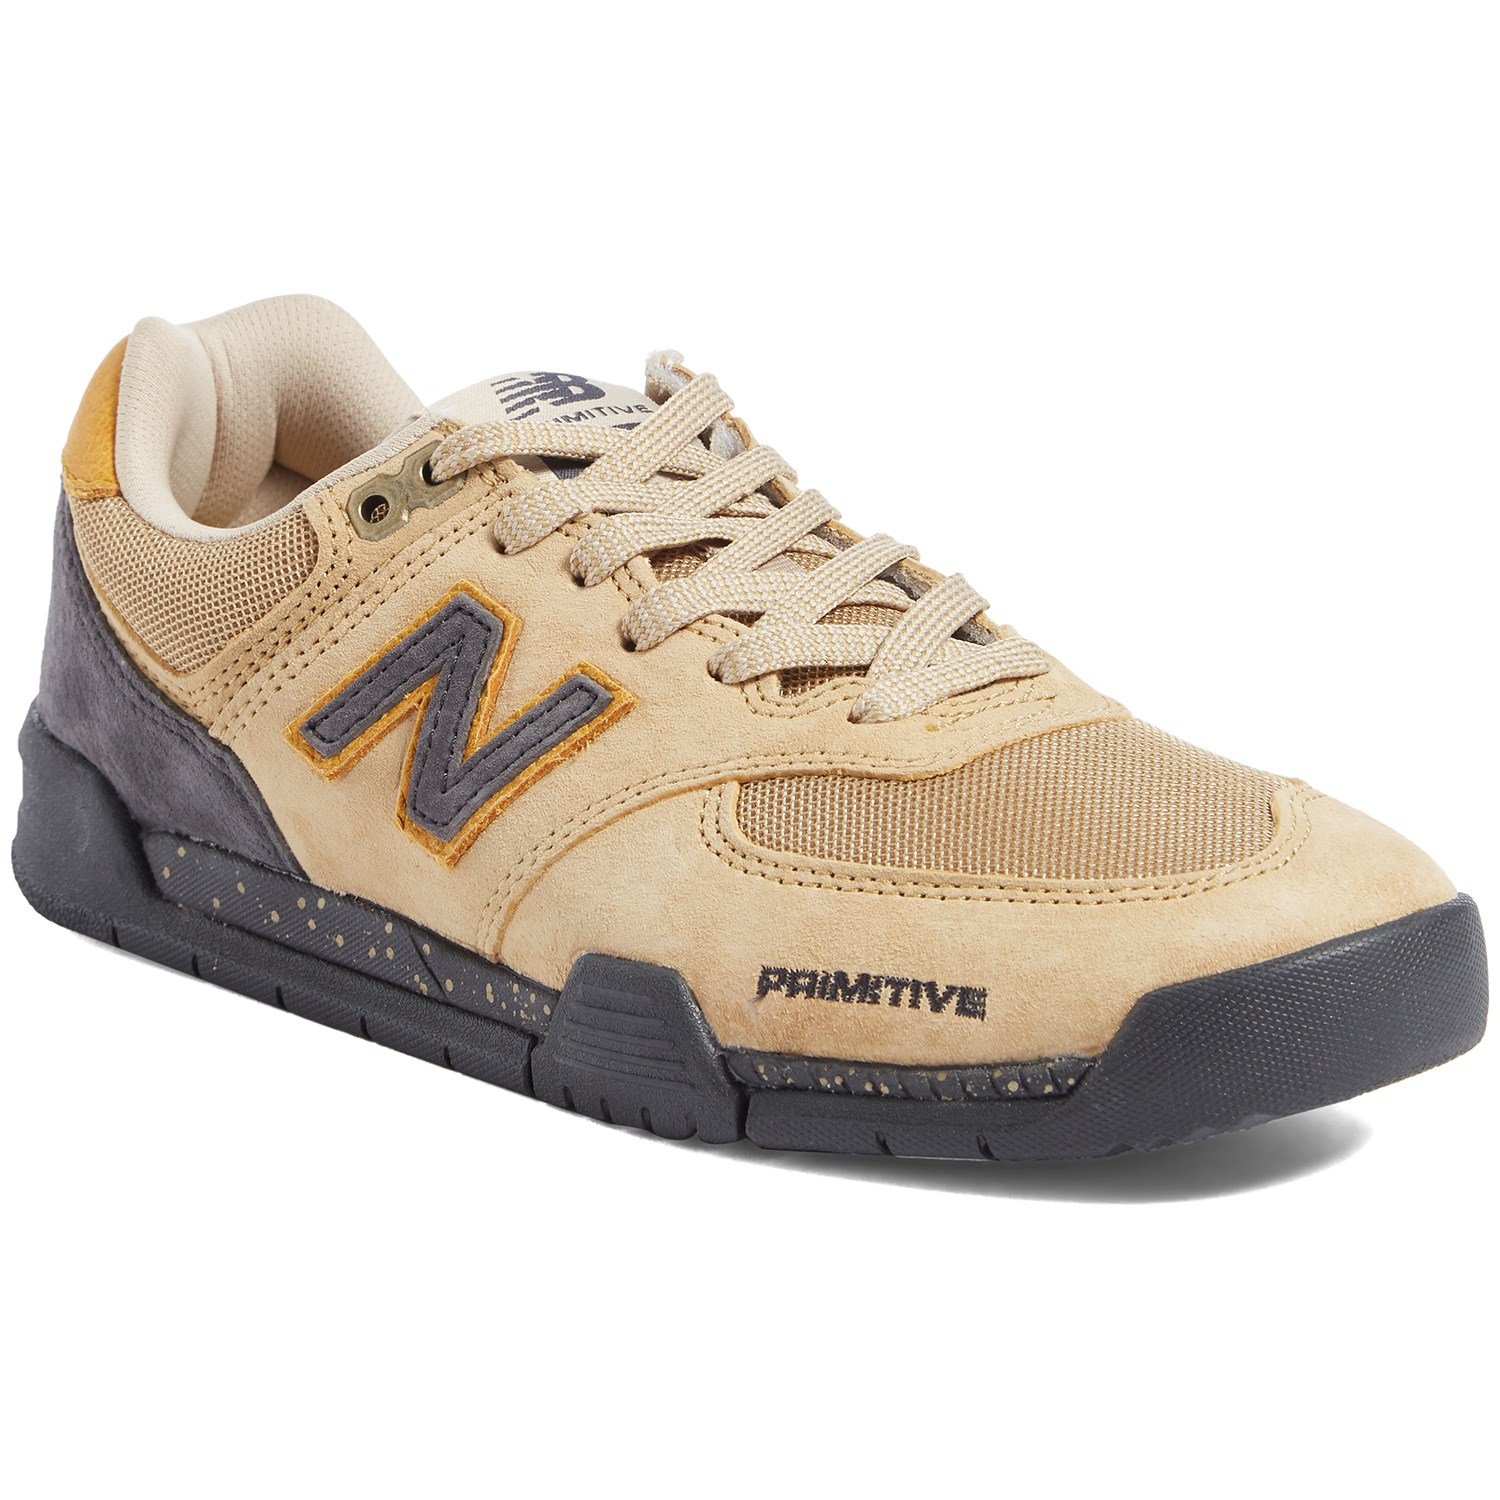 New Balance 574 Primitive Trail Shoes - Men's